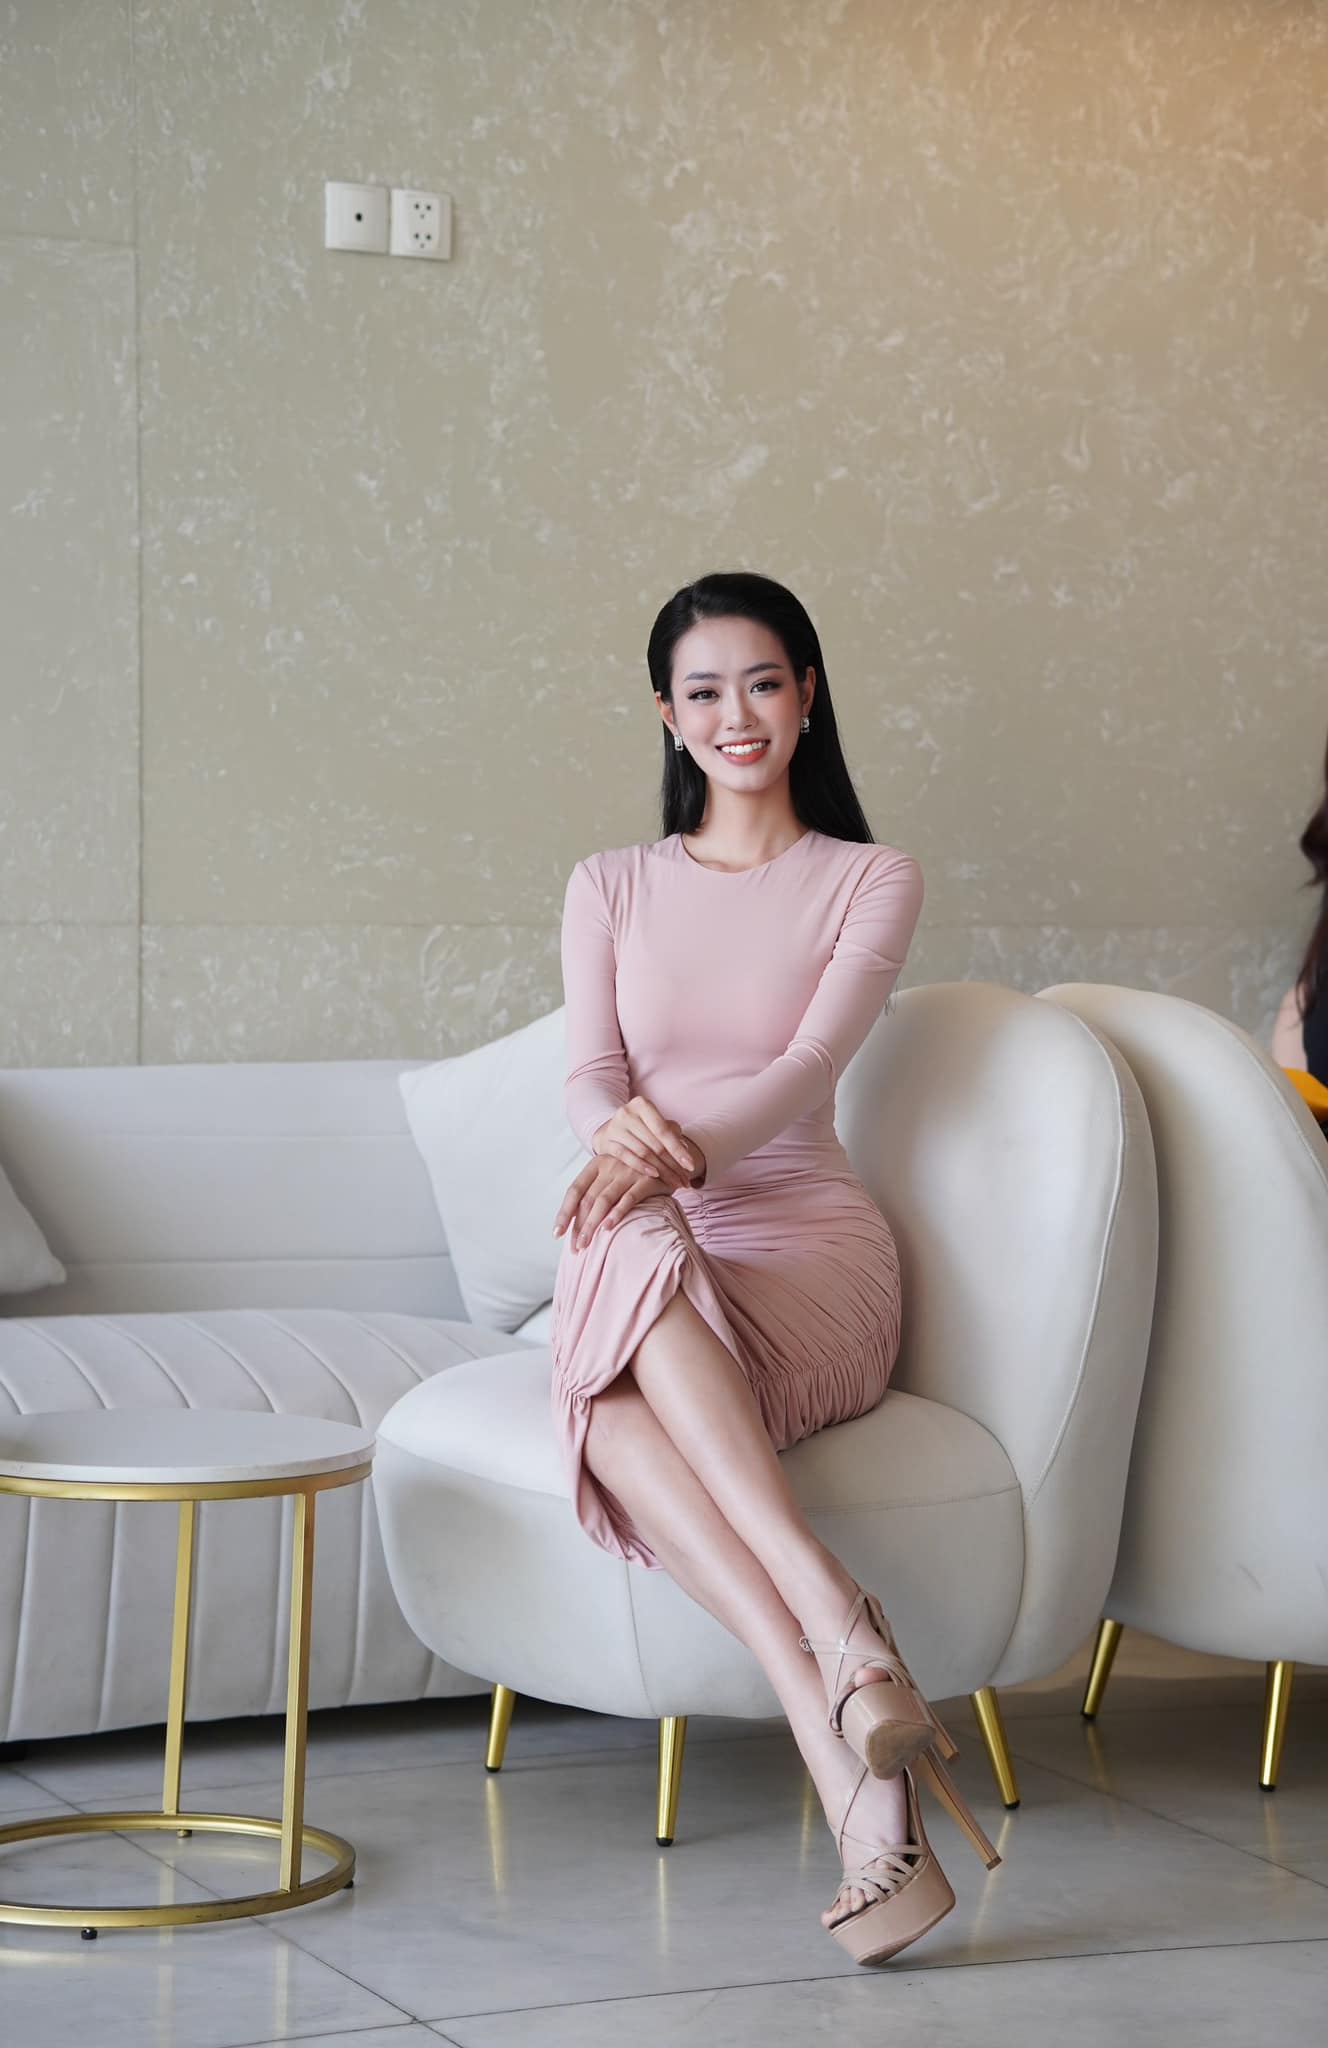 Nhan sắc xinh đẹp, quyến rũ của nữ thủ môn cao 1,76 m vào chung khảo Miss World Vietnam 2023 - Ảnh 5.